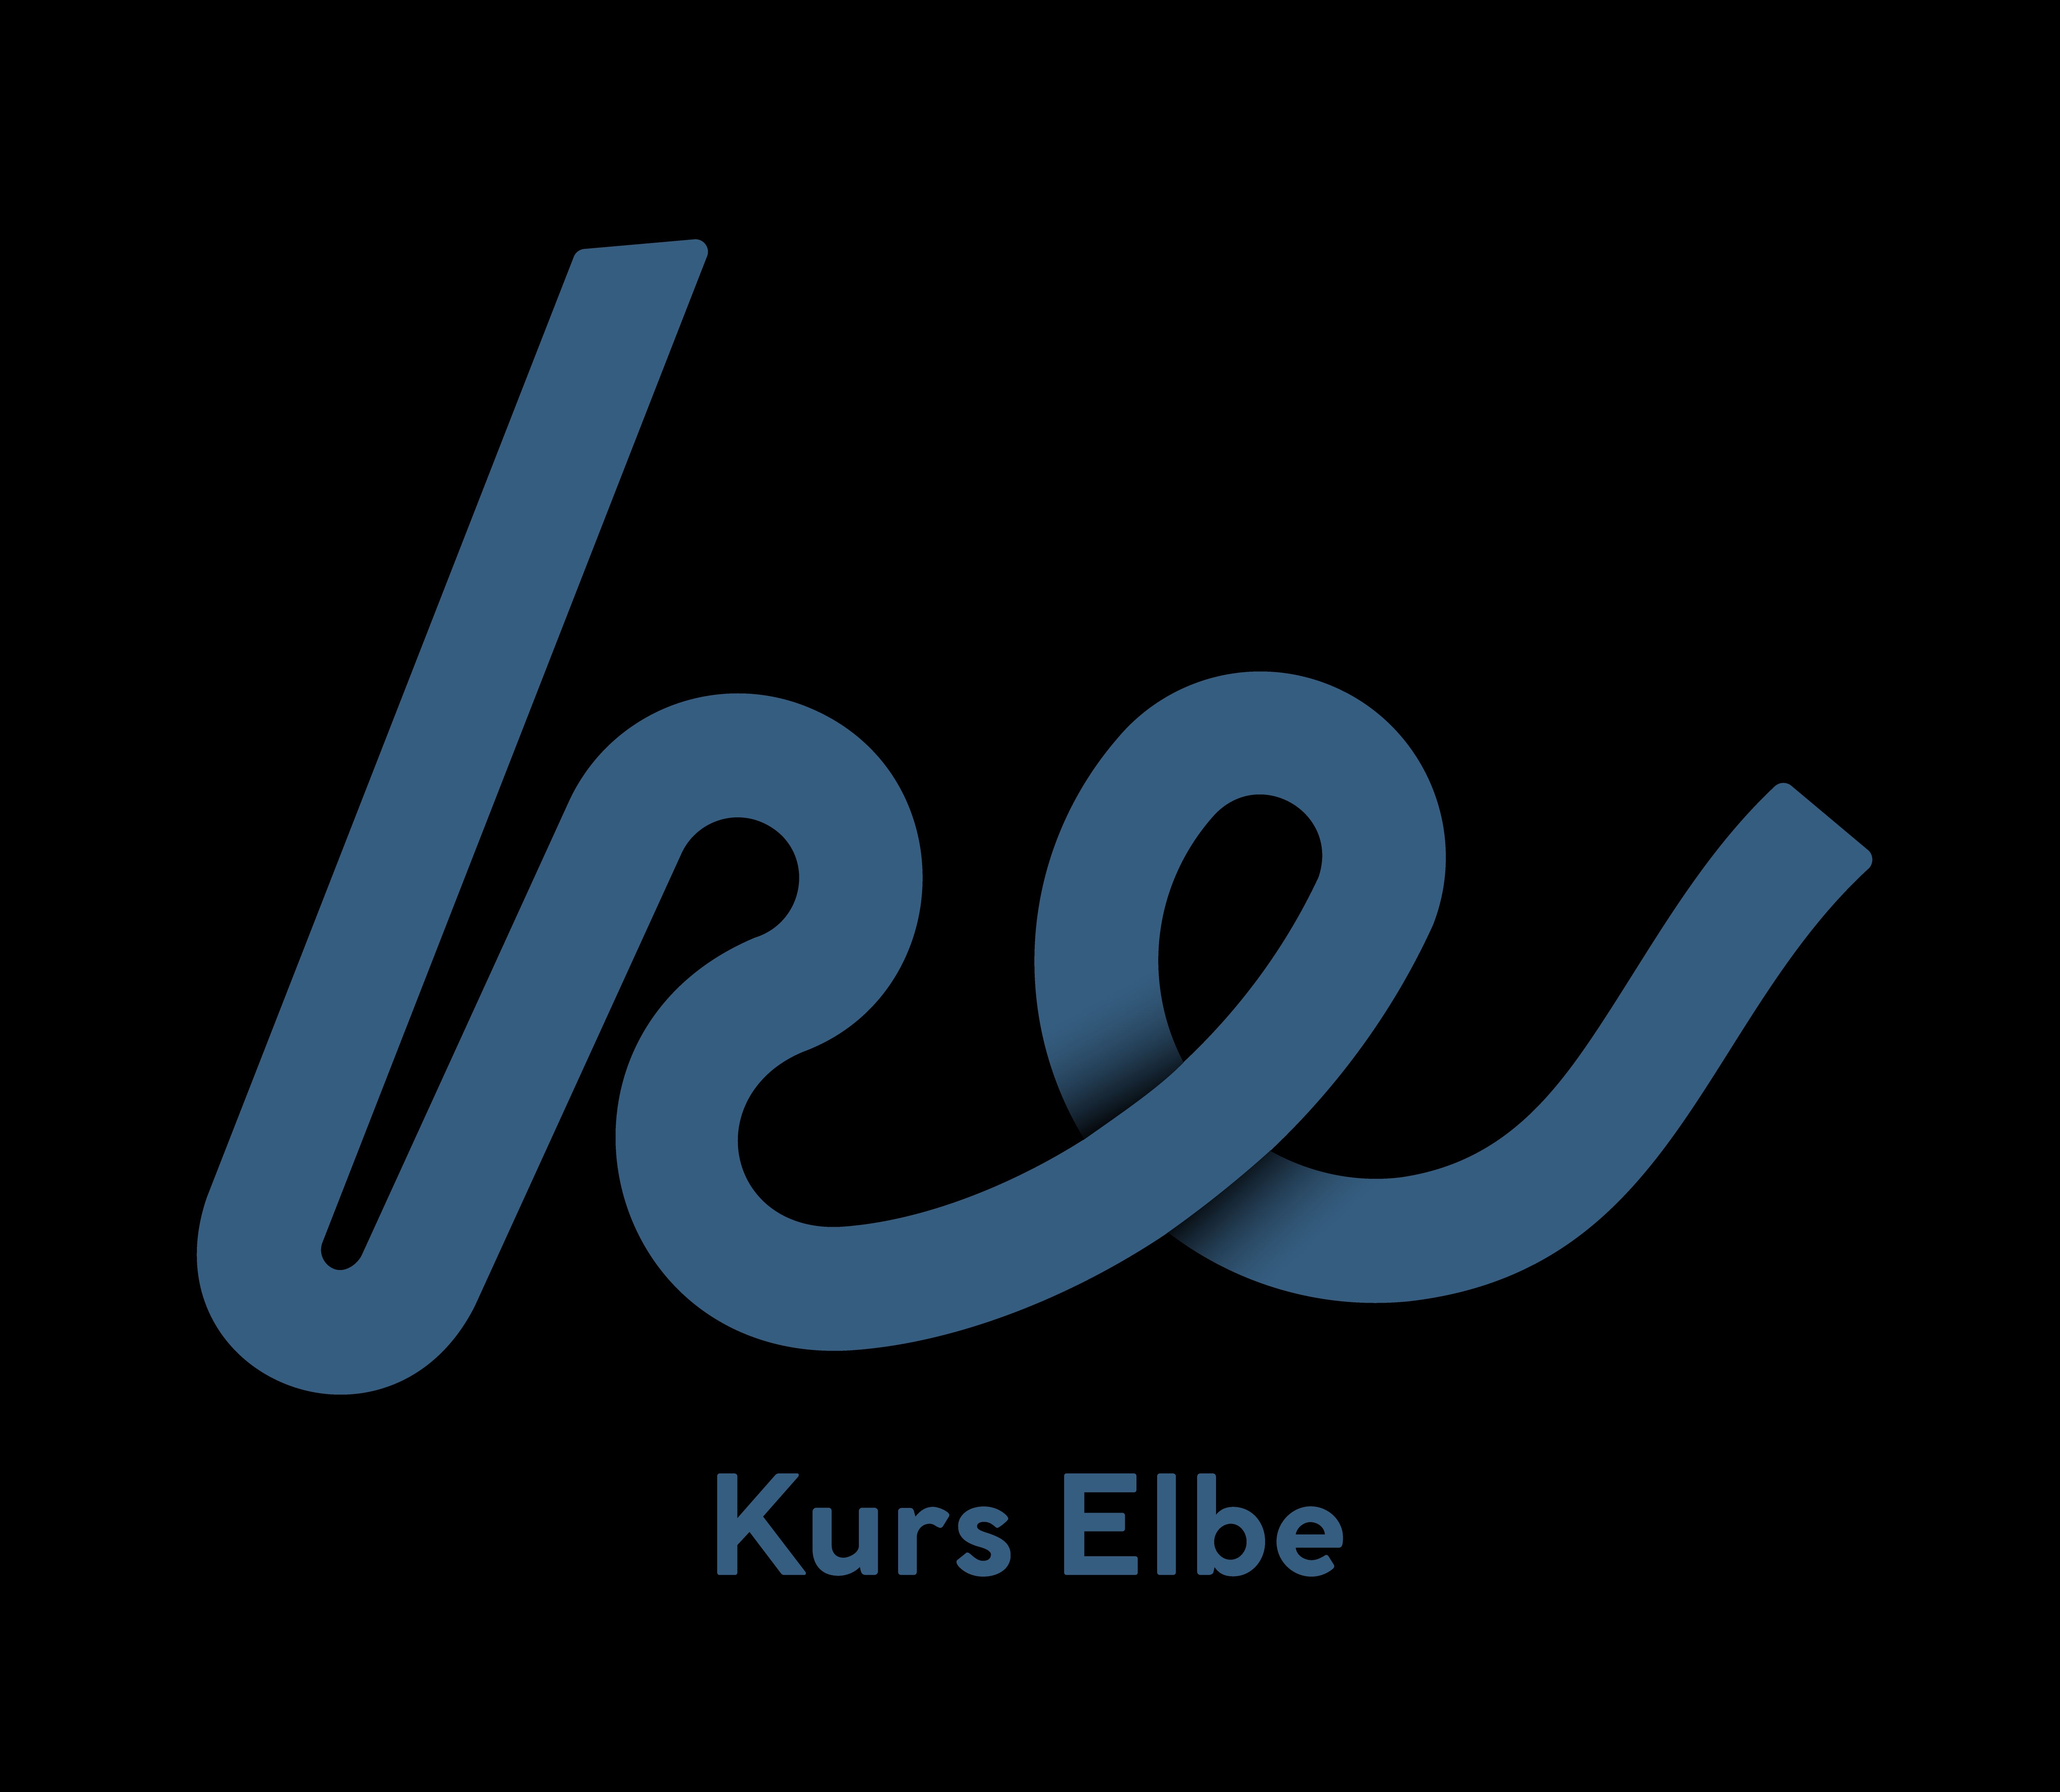 Wortbildmarke Kurs Elbe